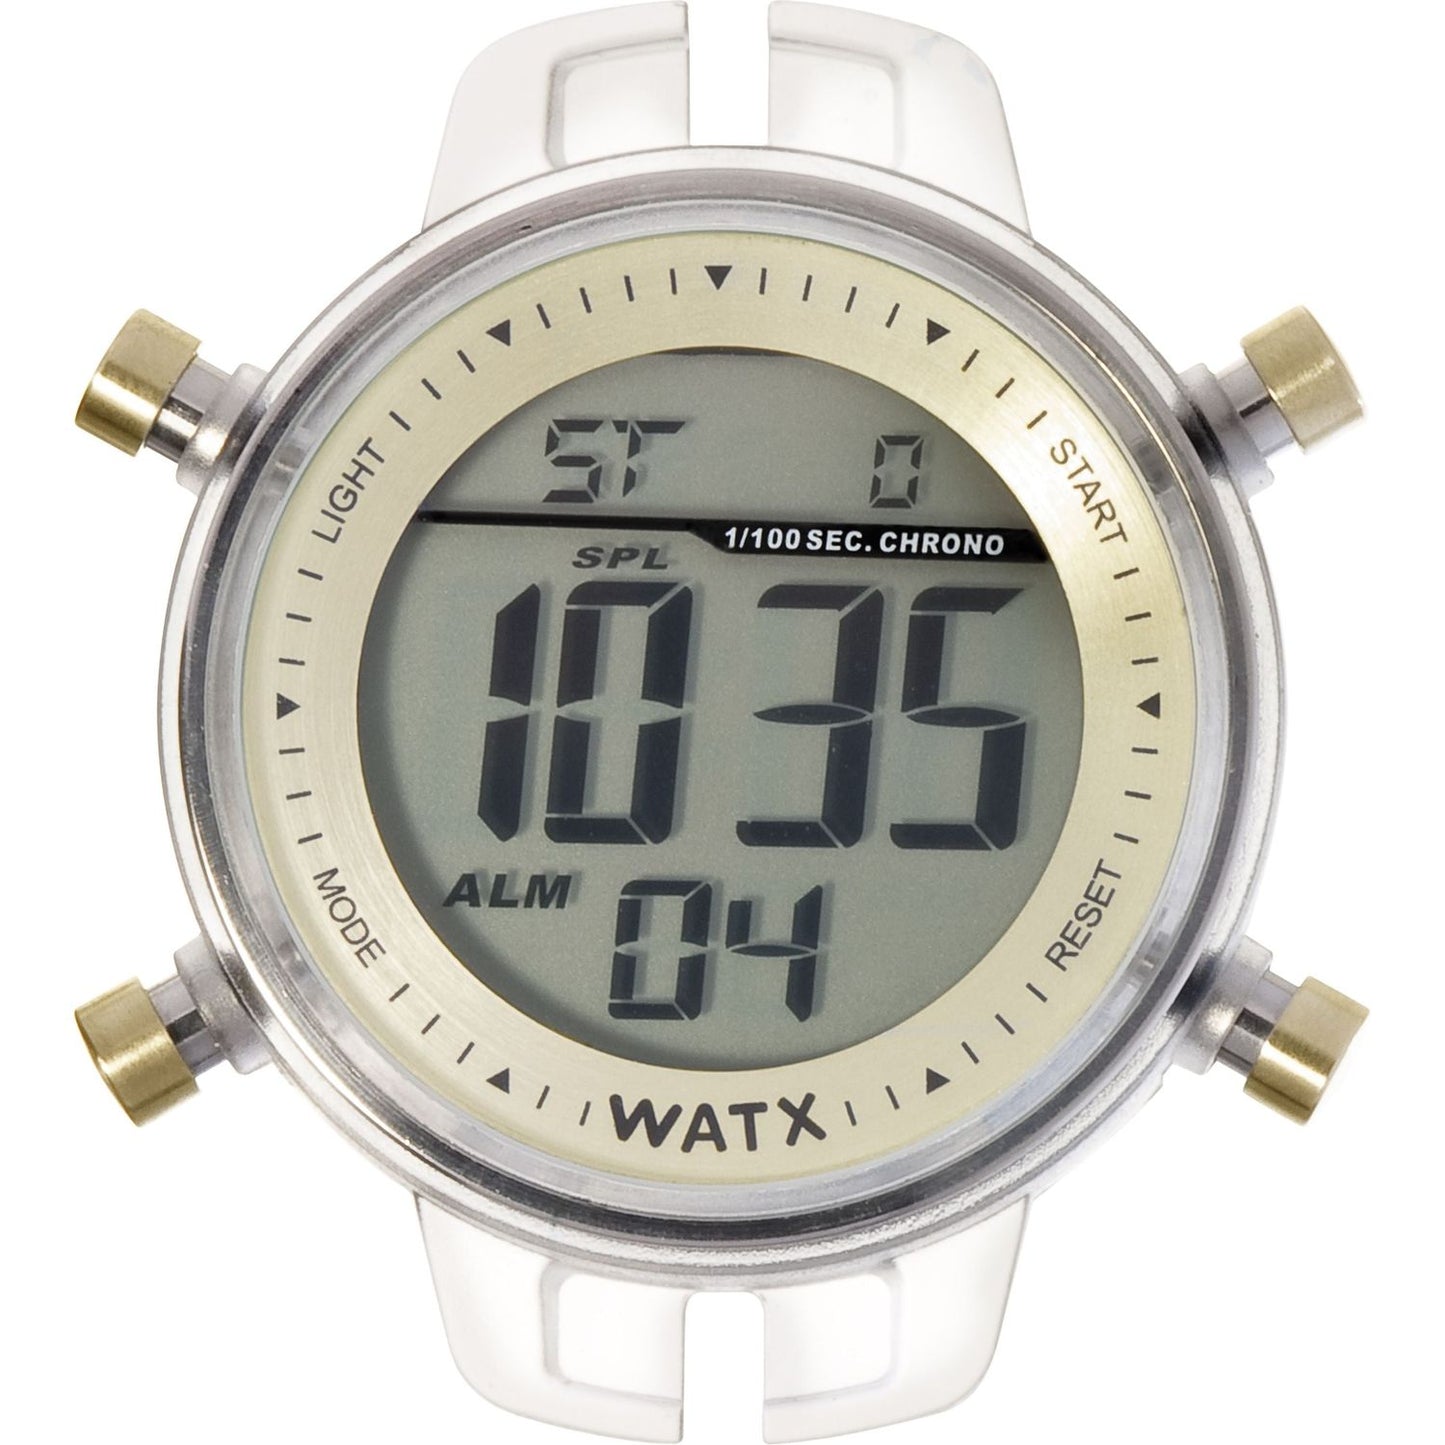 WATX&COLORS WATX&COLORS WATCHES Mod. RWA1008 WATCHES watxcolors-watches-mod-rwa1008-1